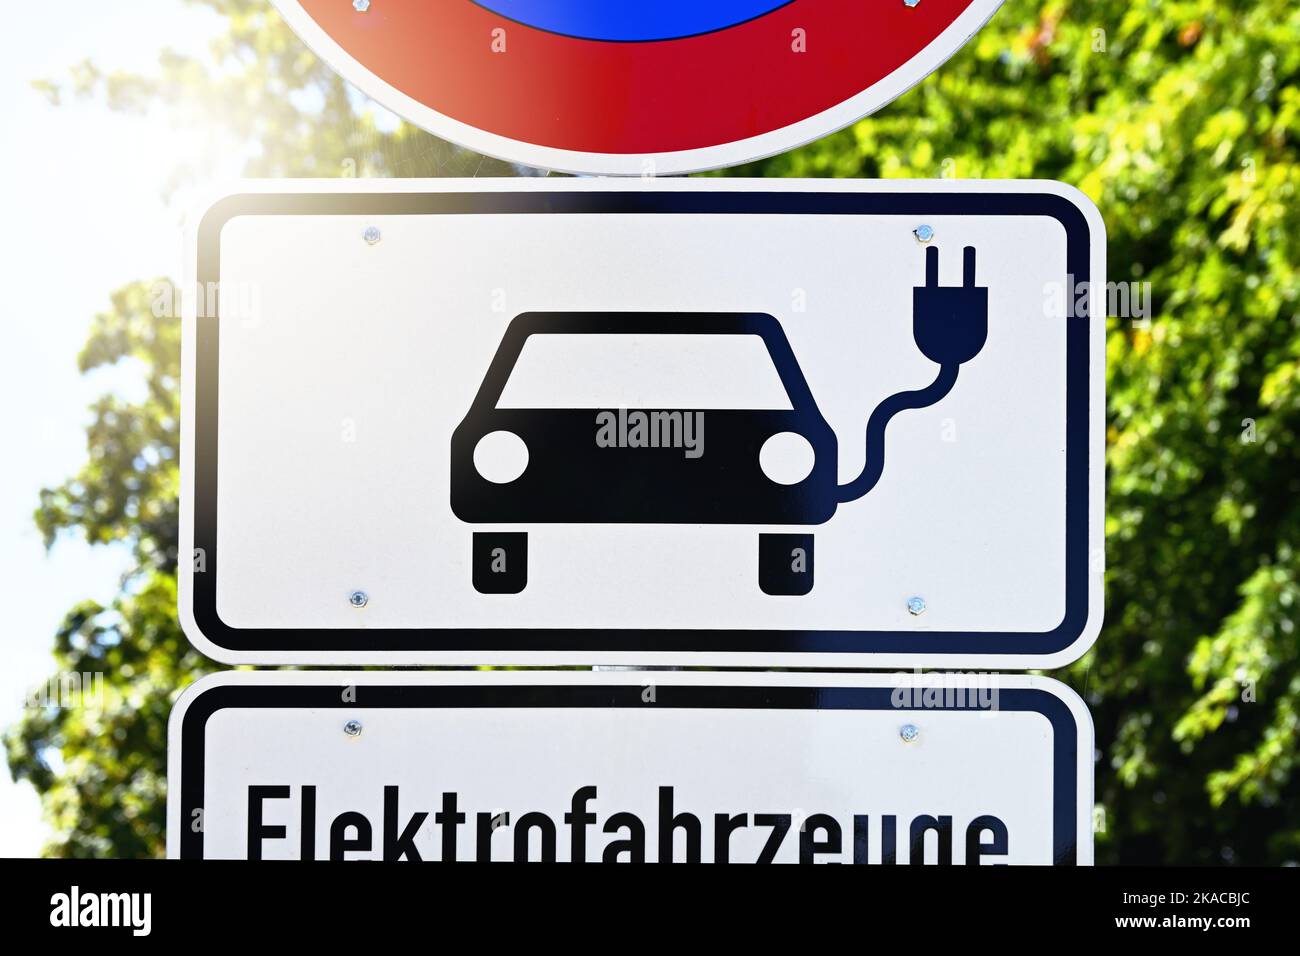 Schild an einer Ladesäule für Elektroautos, Symbolfoto Elektromobilität Stock Photo